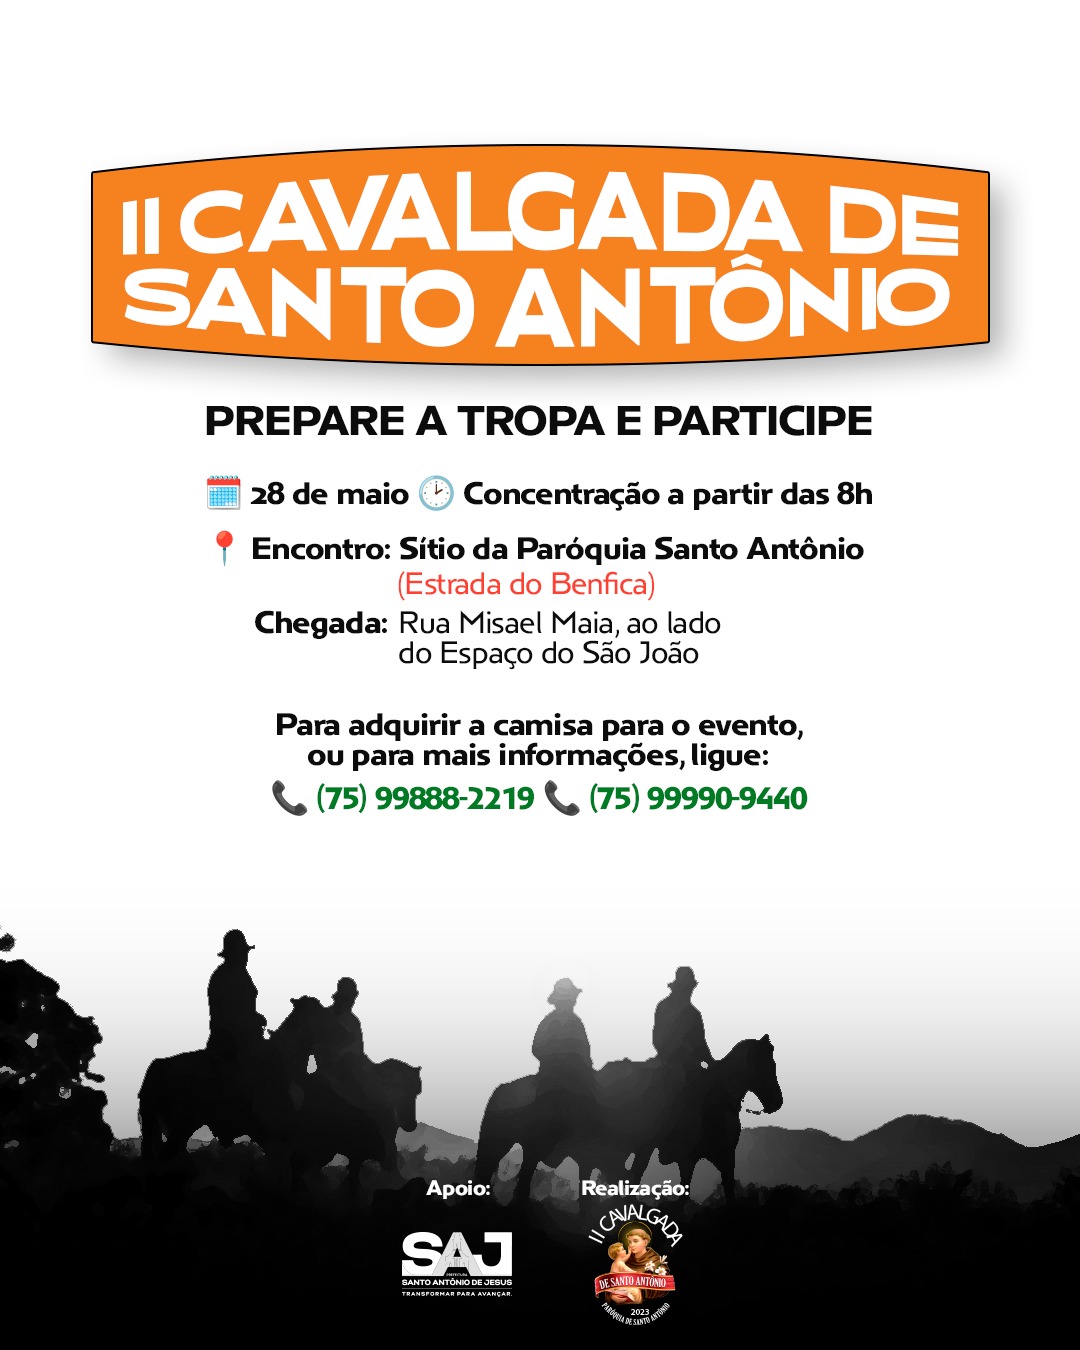 Prefeitura, através da Secretaria de Cultura (SCTJ), apoiará a realização da II Cavalgada de Santo Antônio